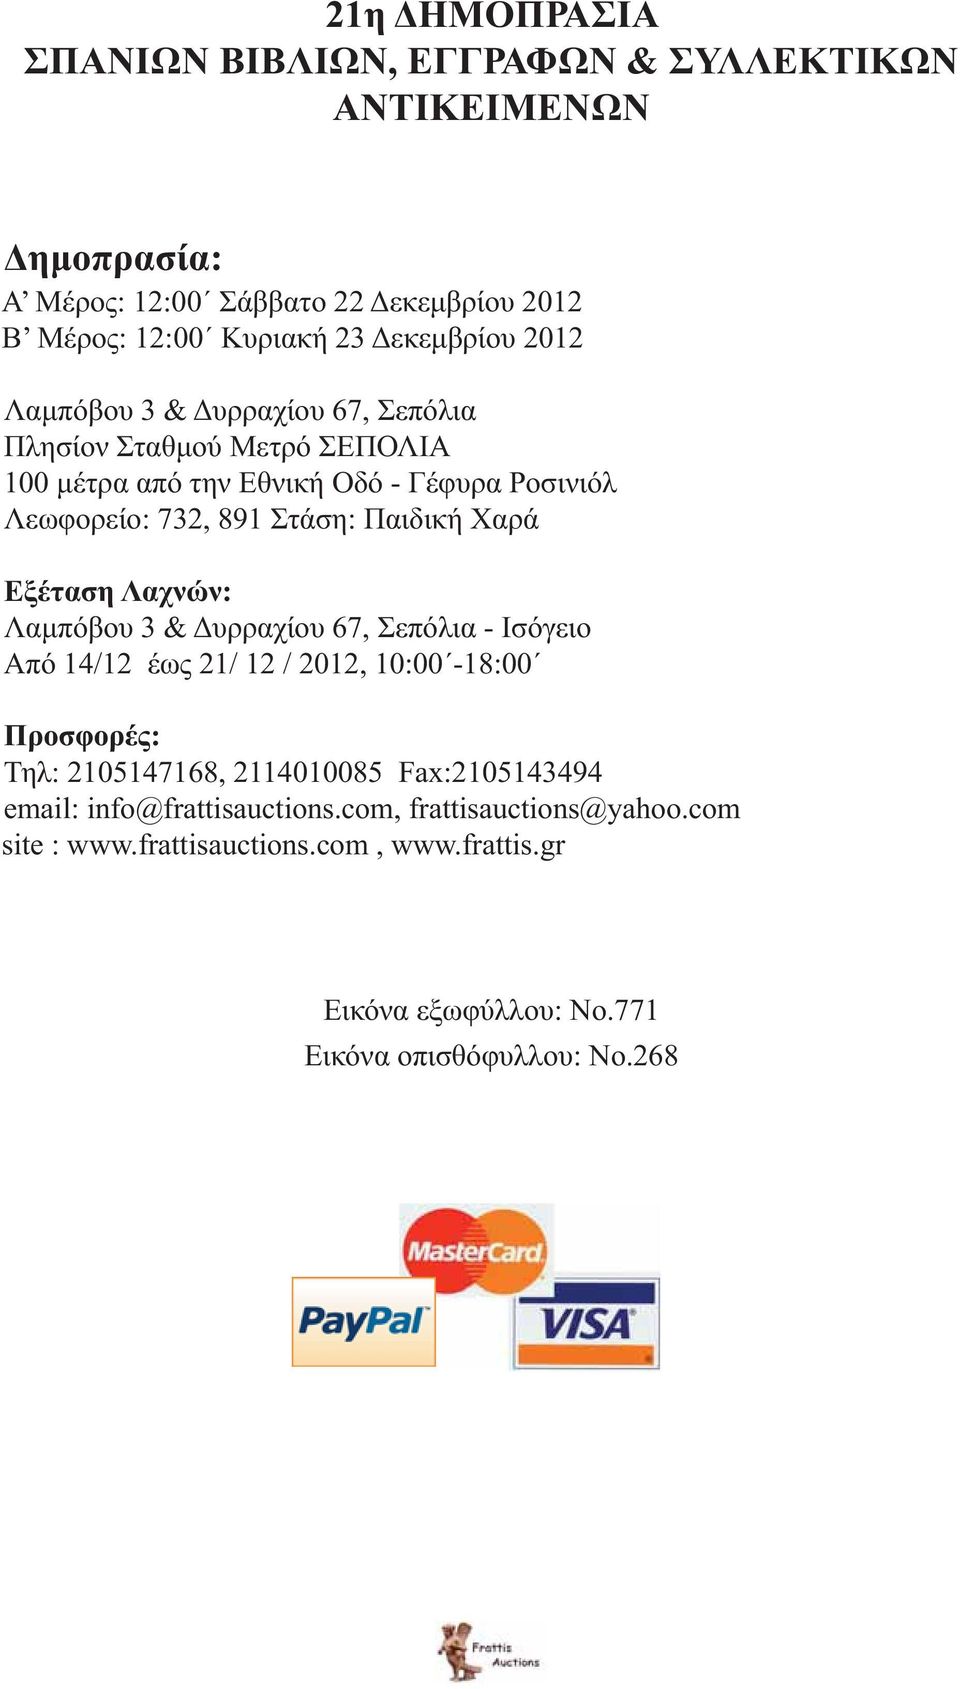 Παιδική Χαρά Εξέταση Λαχνών: Λαμπόβου 3 & Δυρραχίου 67, Σεπόλια - Ισόγειο Από 14/12 έως 21/ 12 / 2012, 10:00-18:00 Προσφορές: Τηλ: 2105147168, 2114010085